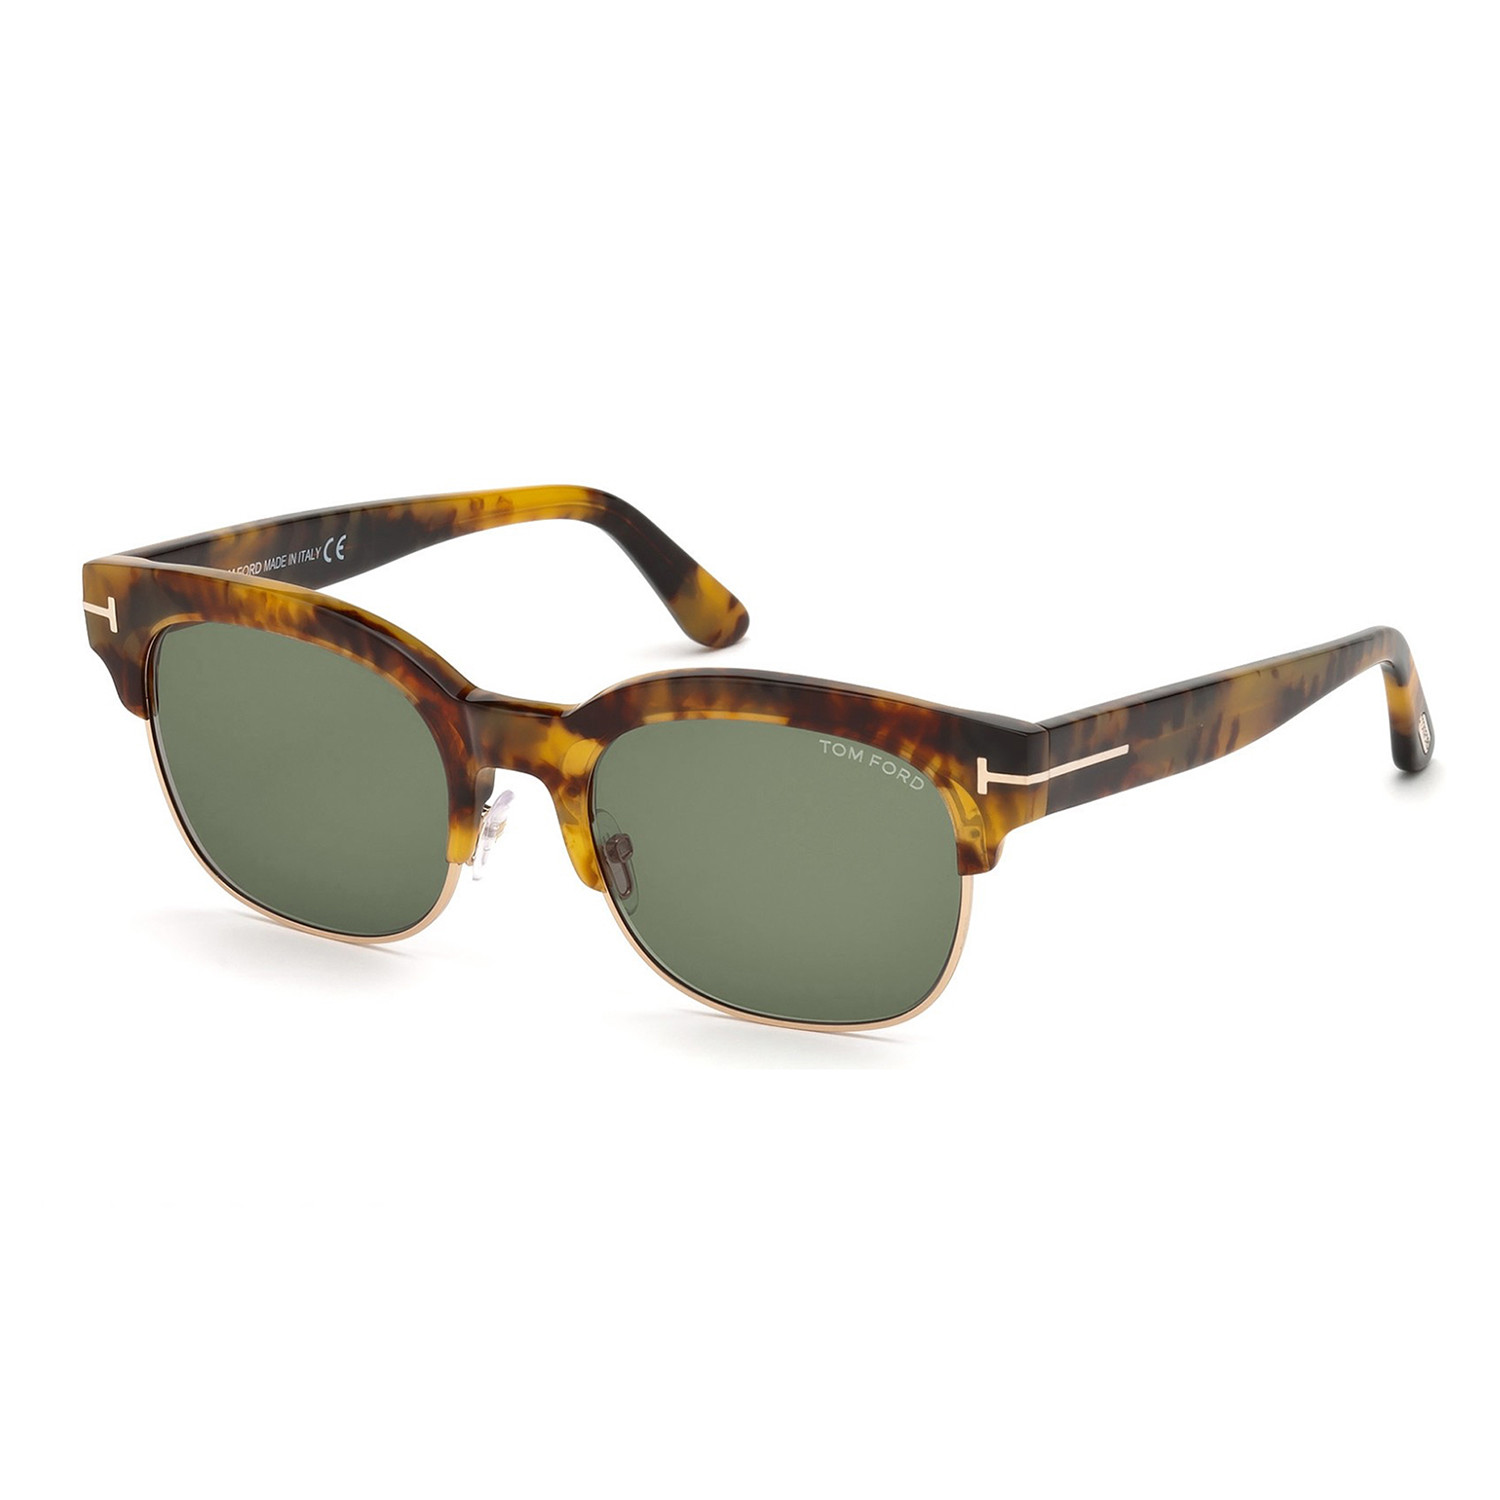 Men's Harry Sunglasses // Havana + Green - Accessories & Watches ...